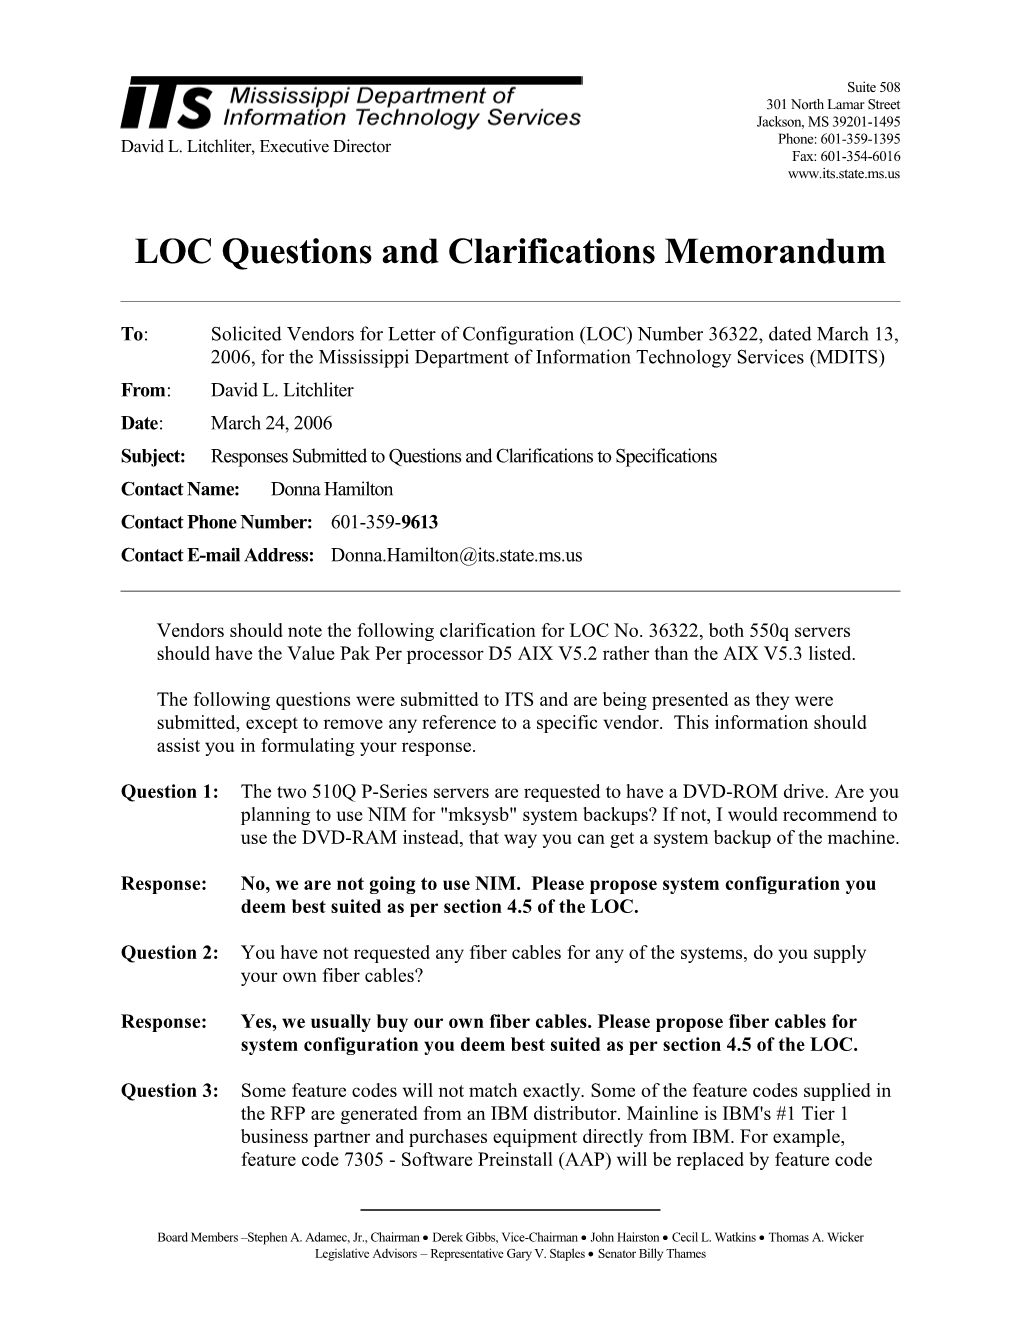 Memorandum for General RFP Configuration s1